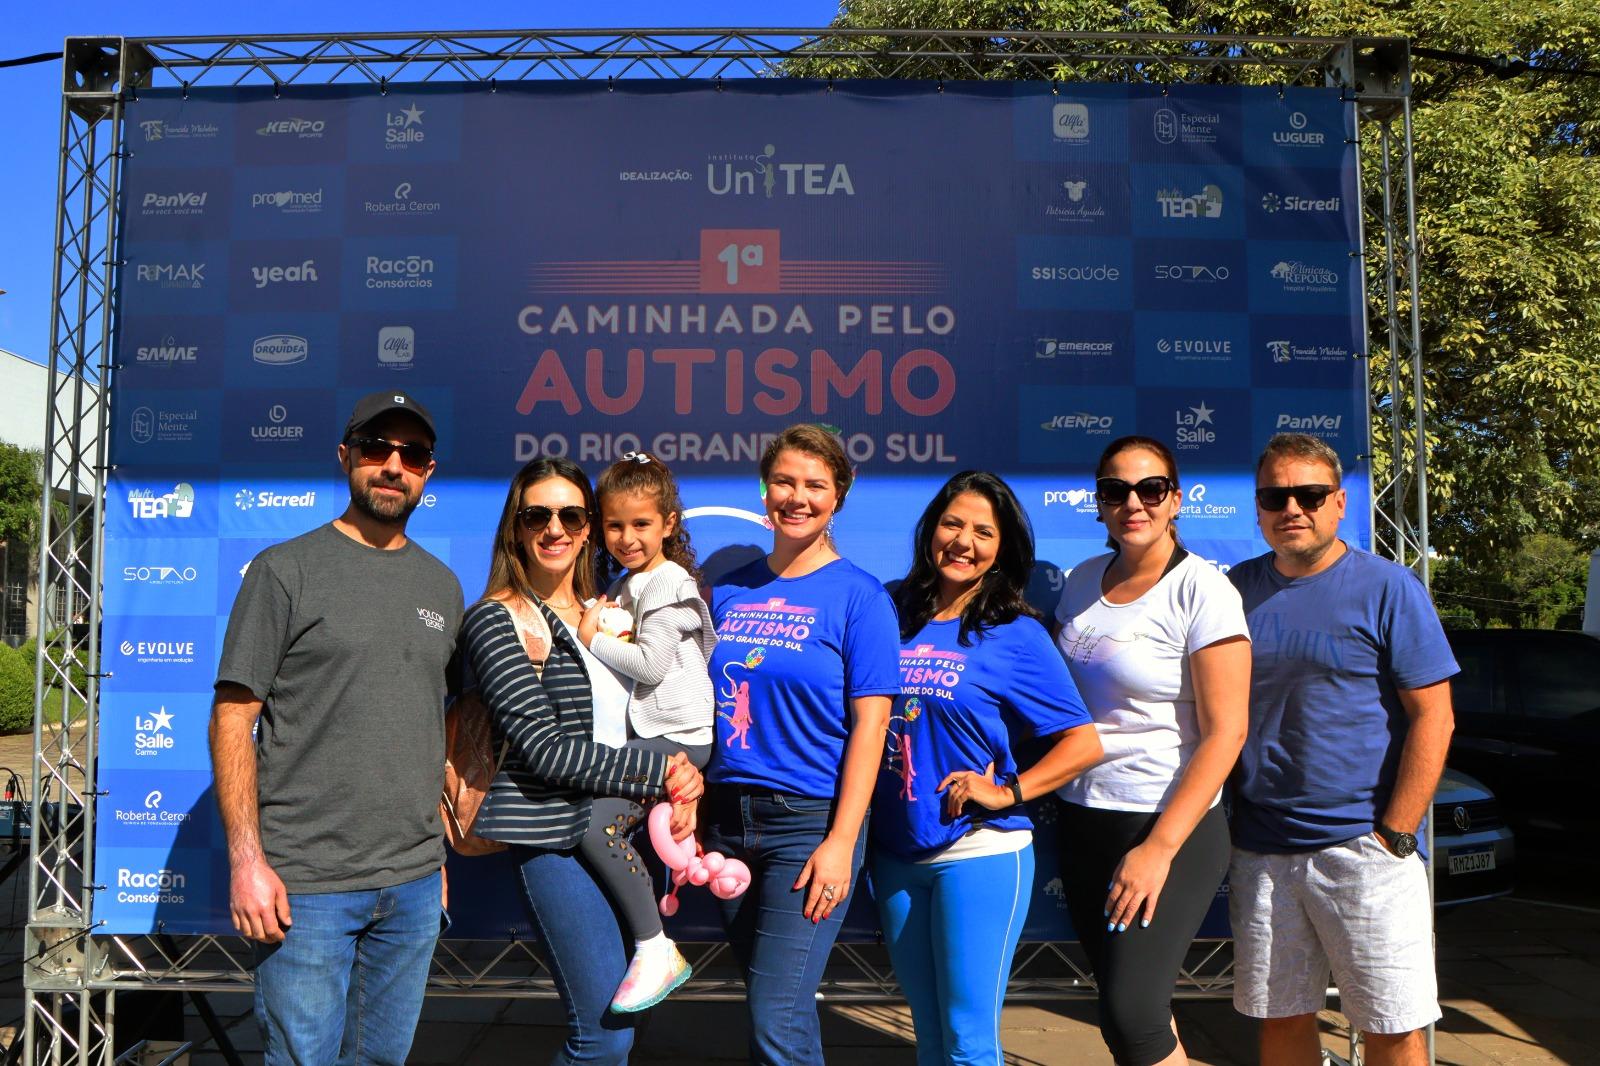 Frente Parlamentar participa da 1ª caminhada pelo autismo do Rio Grande do Sul